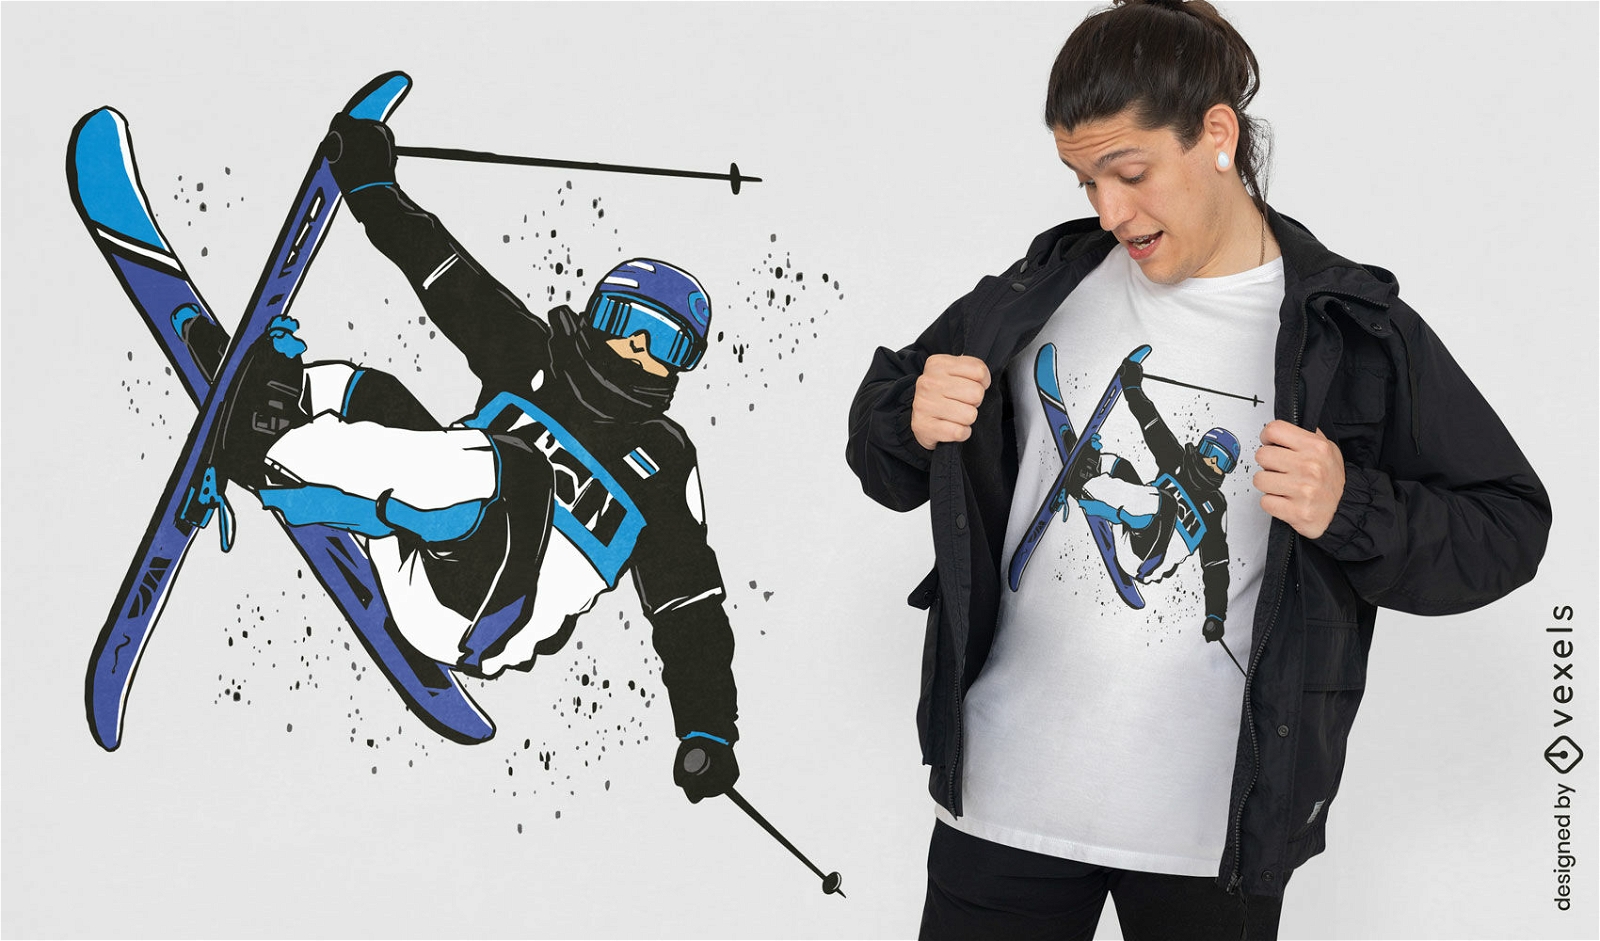 Skier cork trick t-shirt design